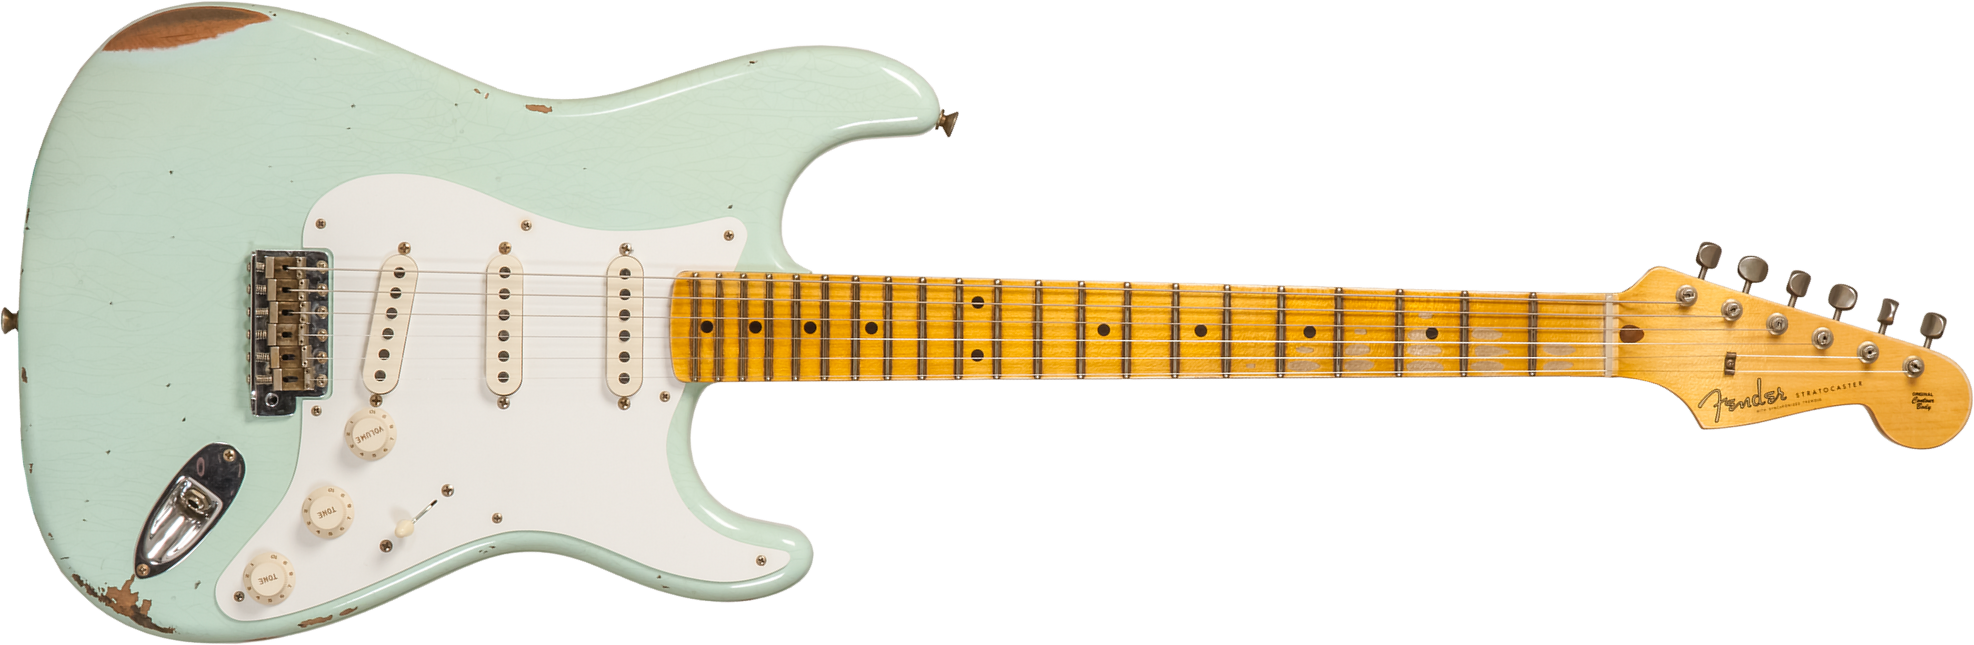 Fender Custom Shop Strat 1958 3s Trem Mn #cz572338 - Relic Aged Surf Green - Guitare Électrique Forme Str - Main picture